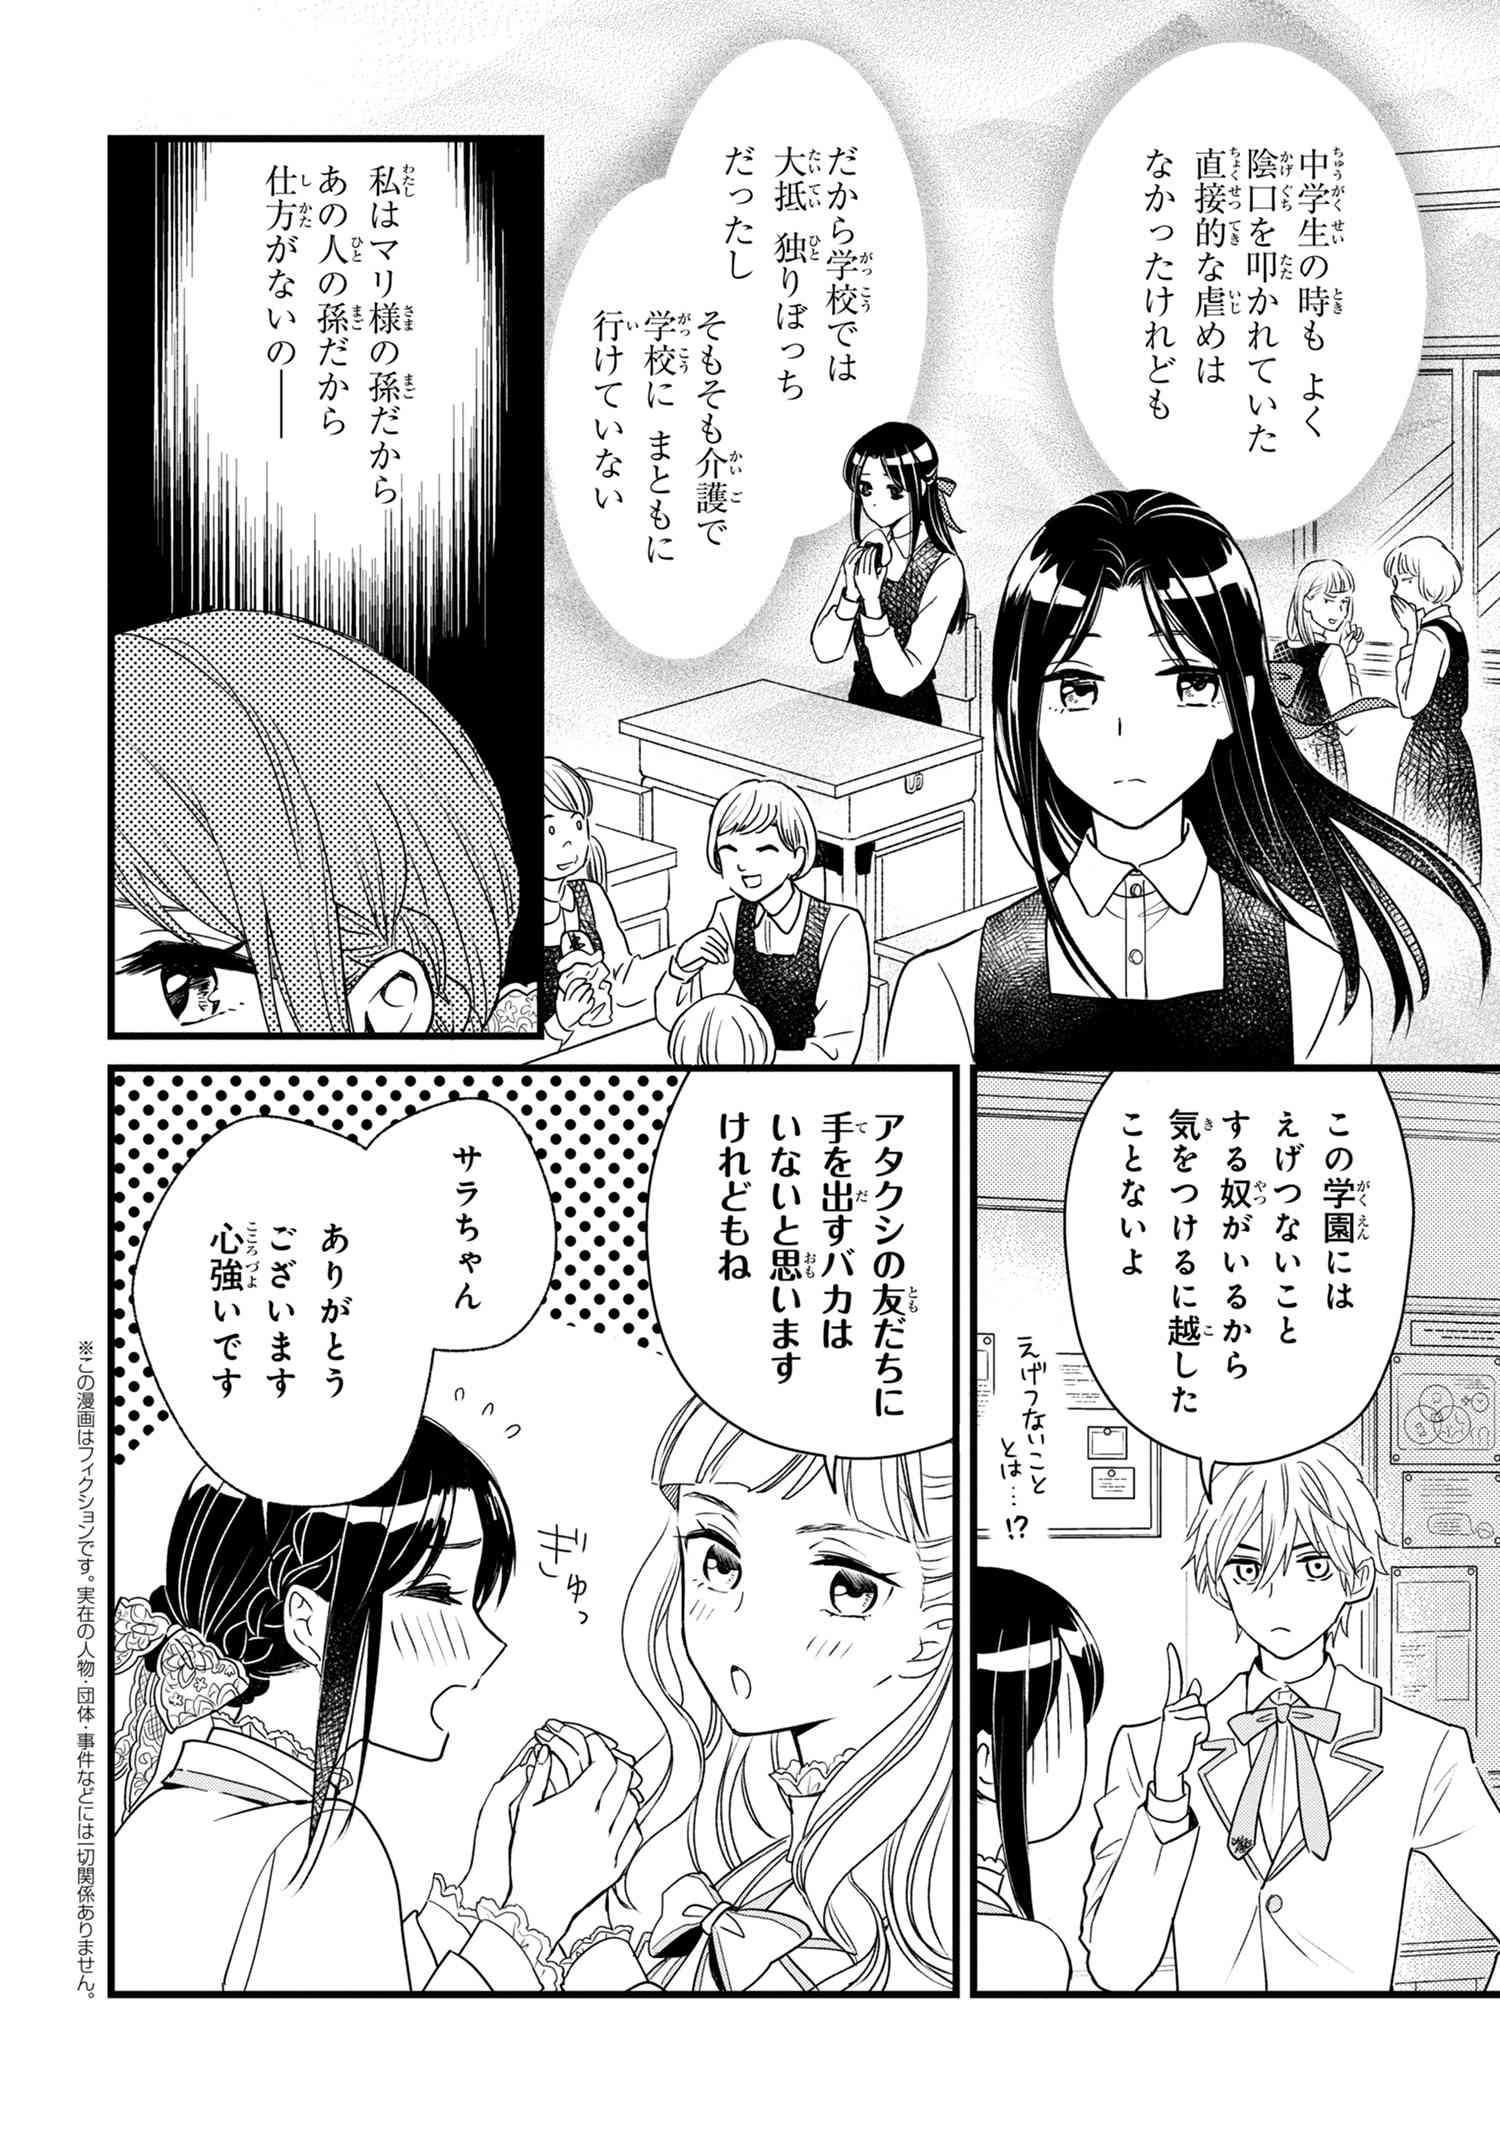 Reiko no Fuugi Akuyaku Reijou to Yobarete imasu ga, tada no Binbou Musume desu - Chapter 3-3 - Page 1